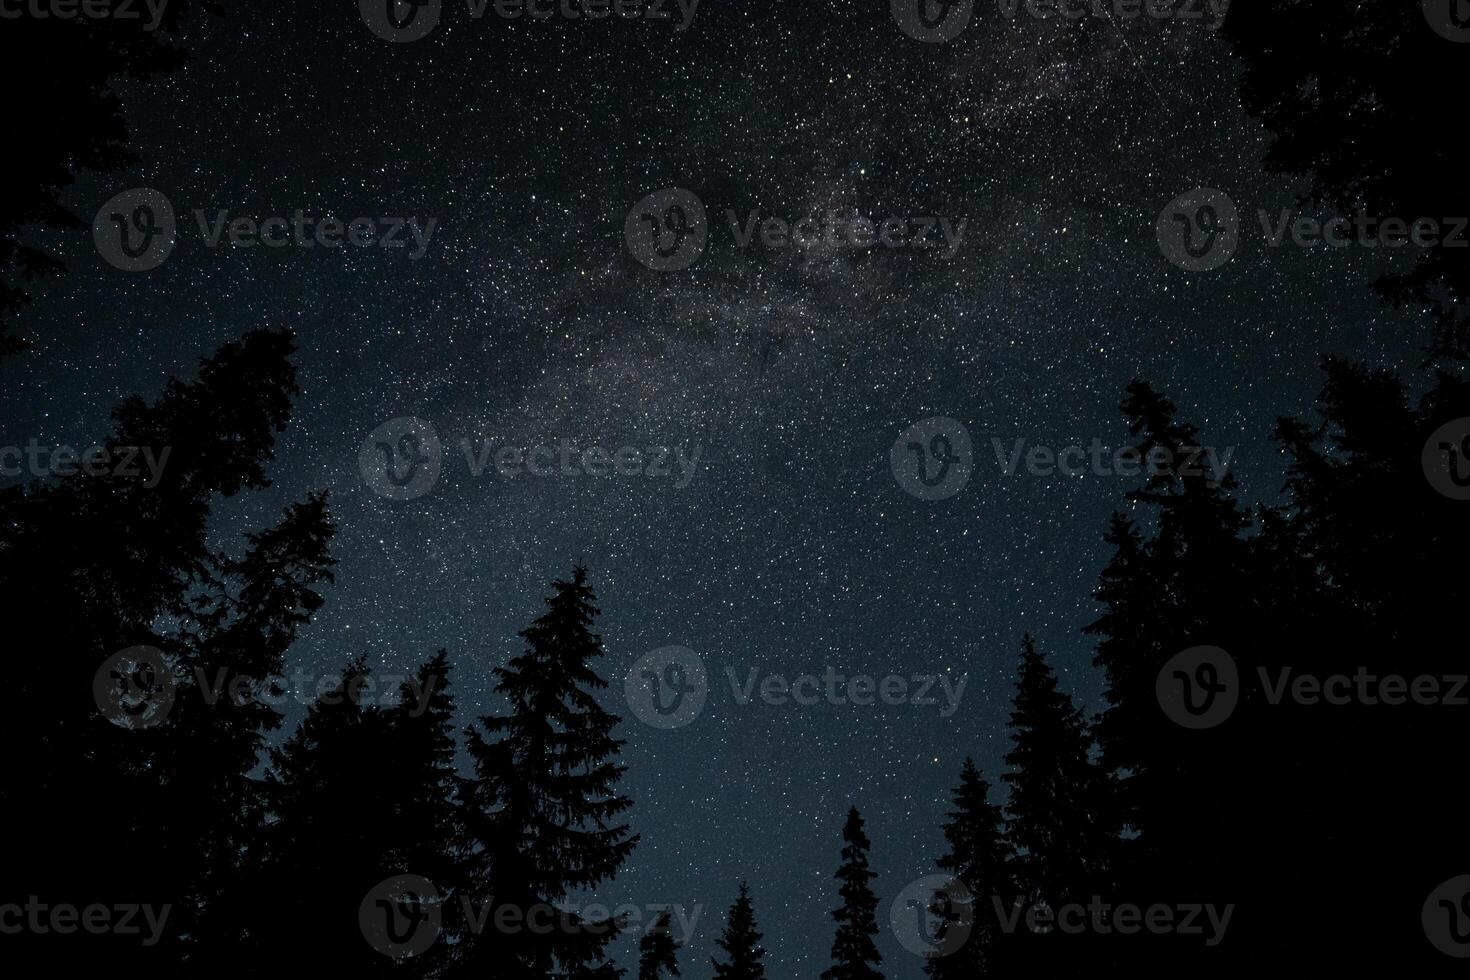 leitoso caminho galáxia sobre a floresta. estrelado noite fundo. foto